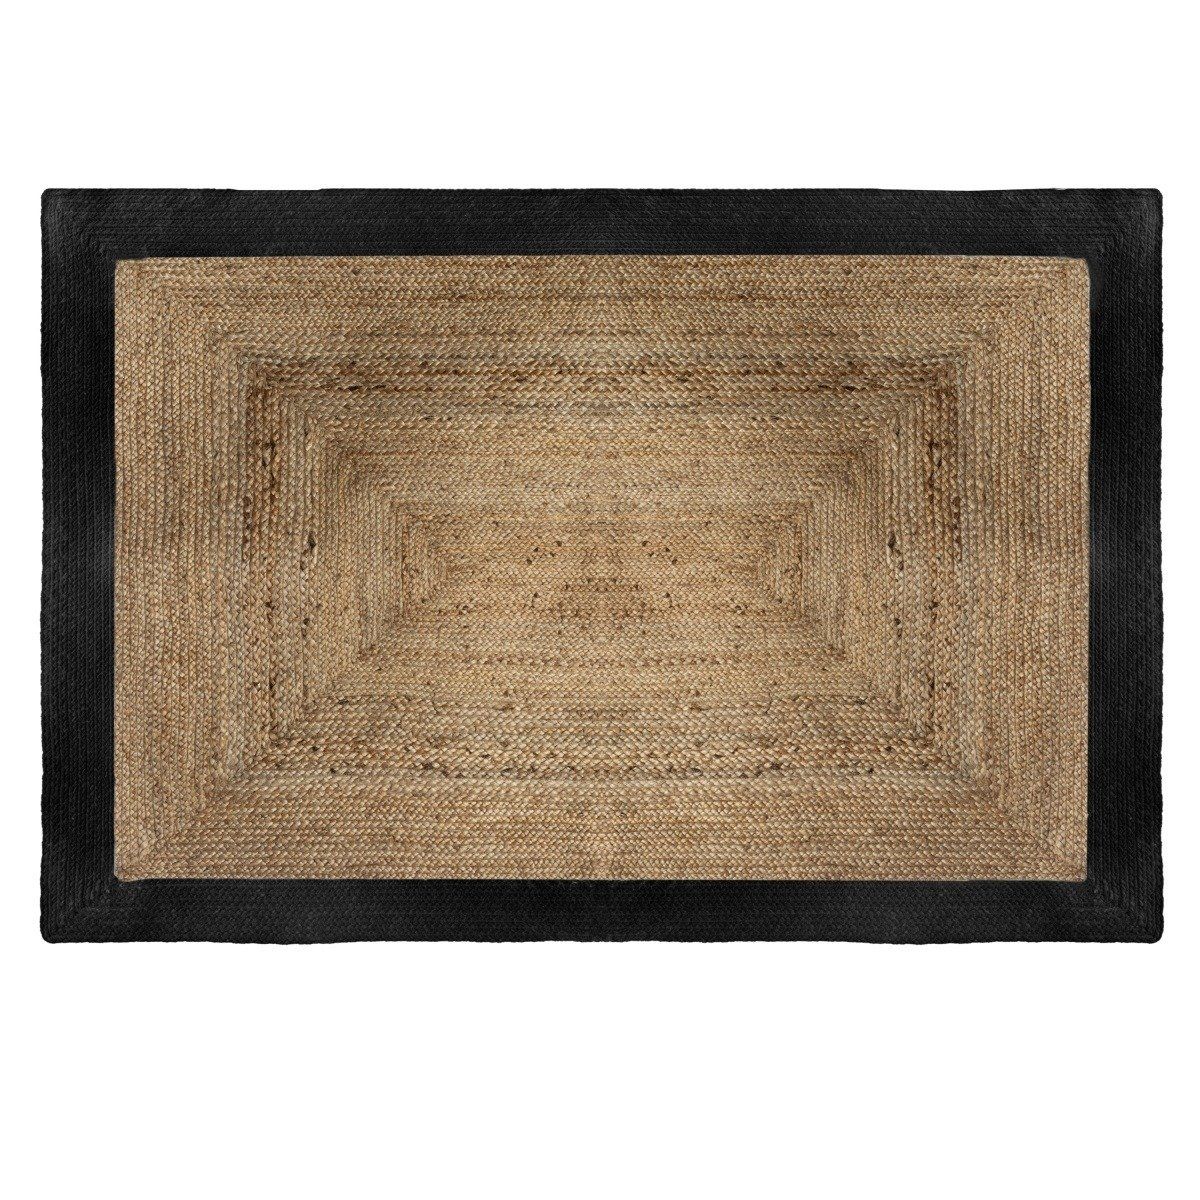 Atmosphera Jutový koberec, obdélníkový, 120 x 170 cm s černým rámem - EMAKO.CZ s.r.o.